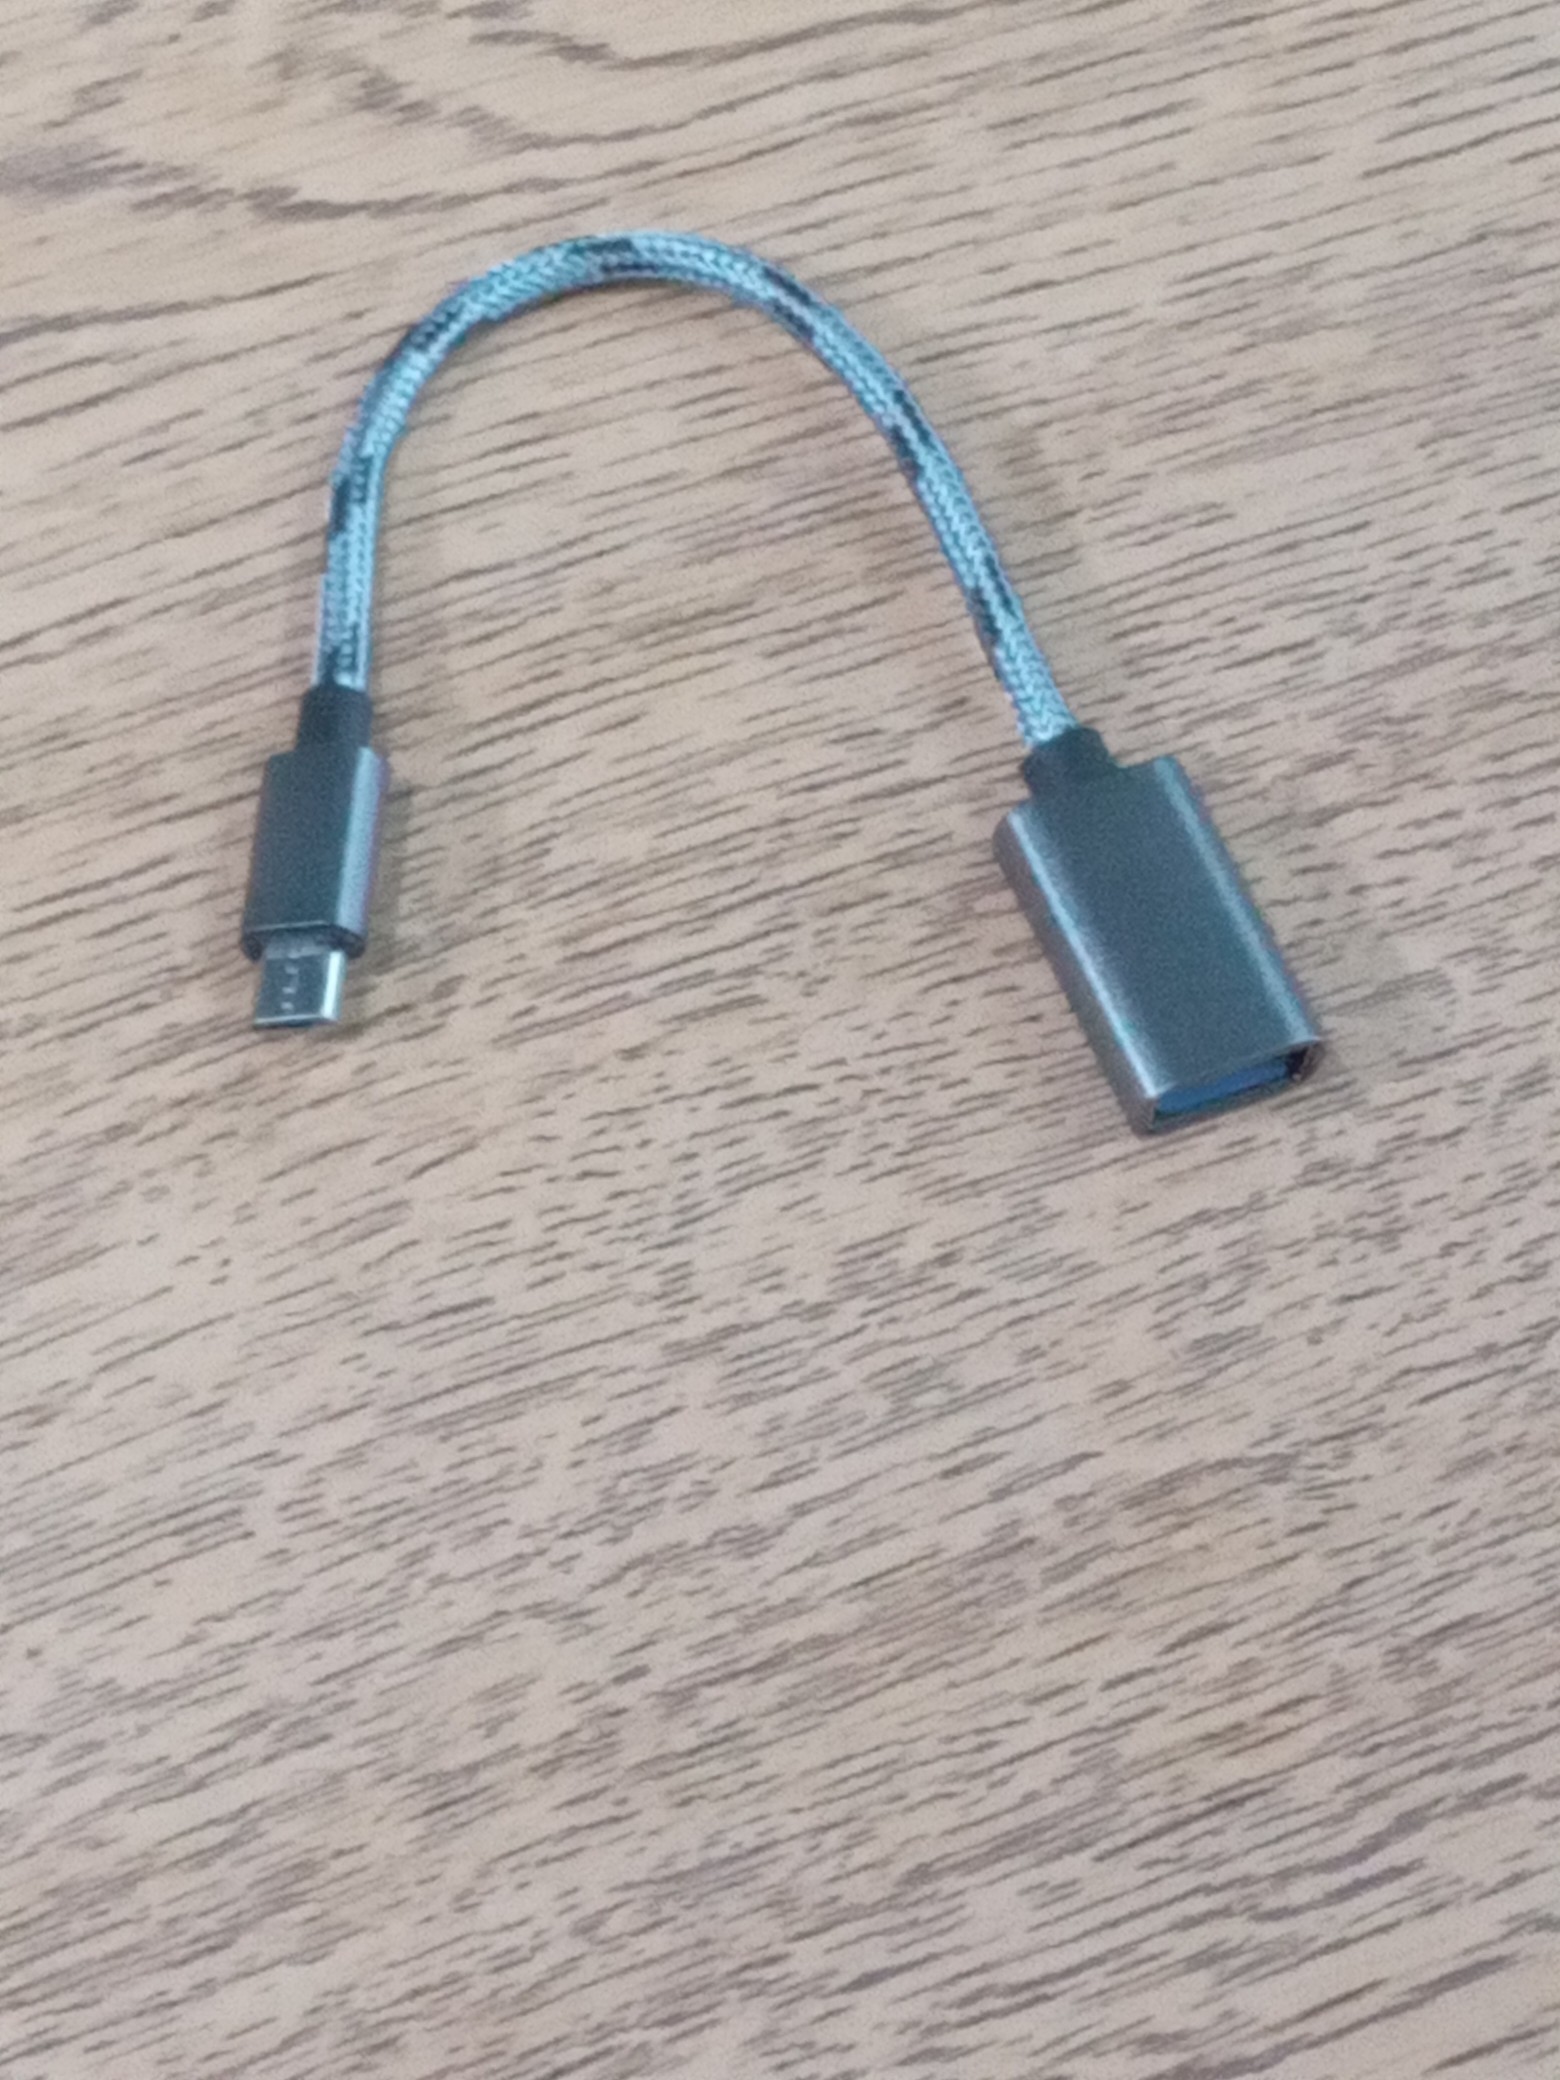 accesorios para electronica - Adaptador USB A Micro USB 0